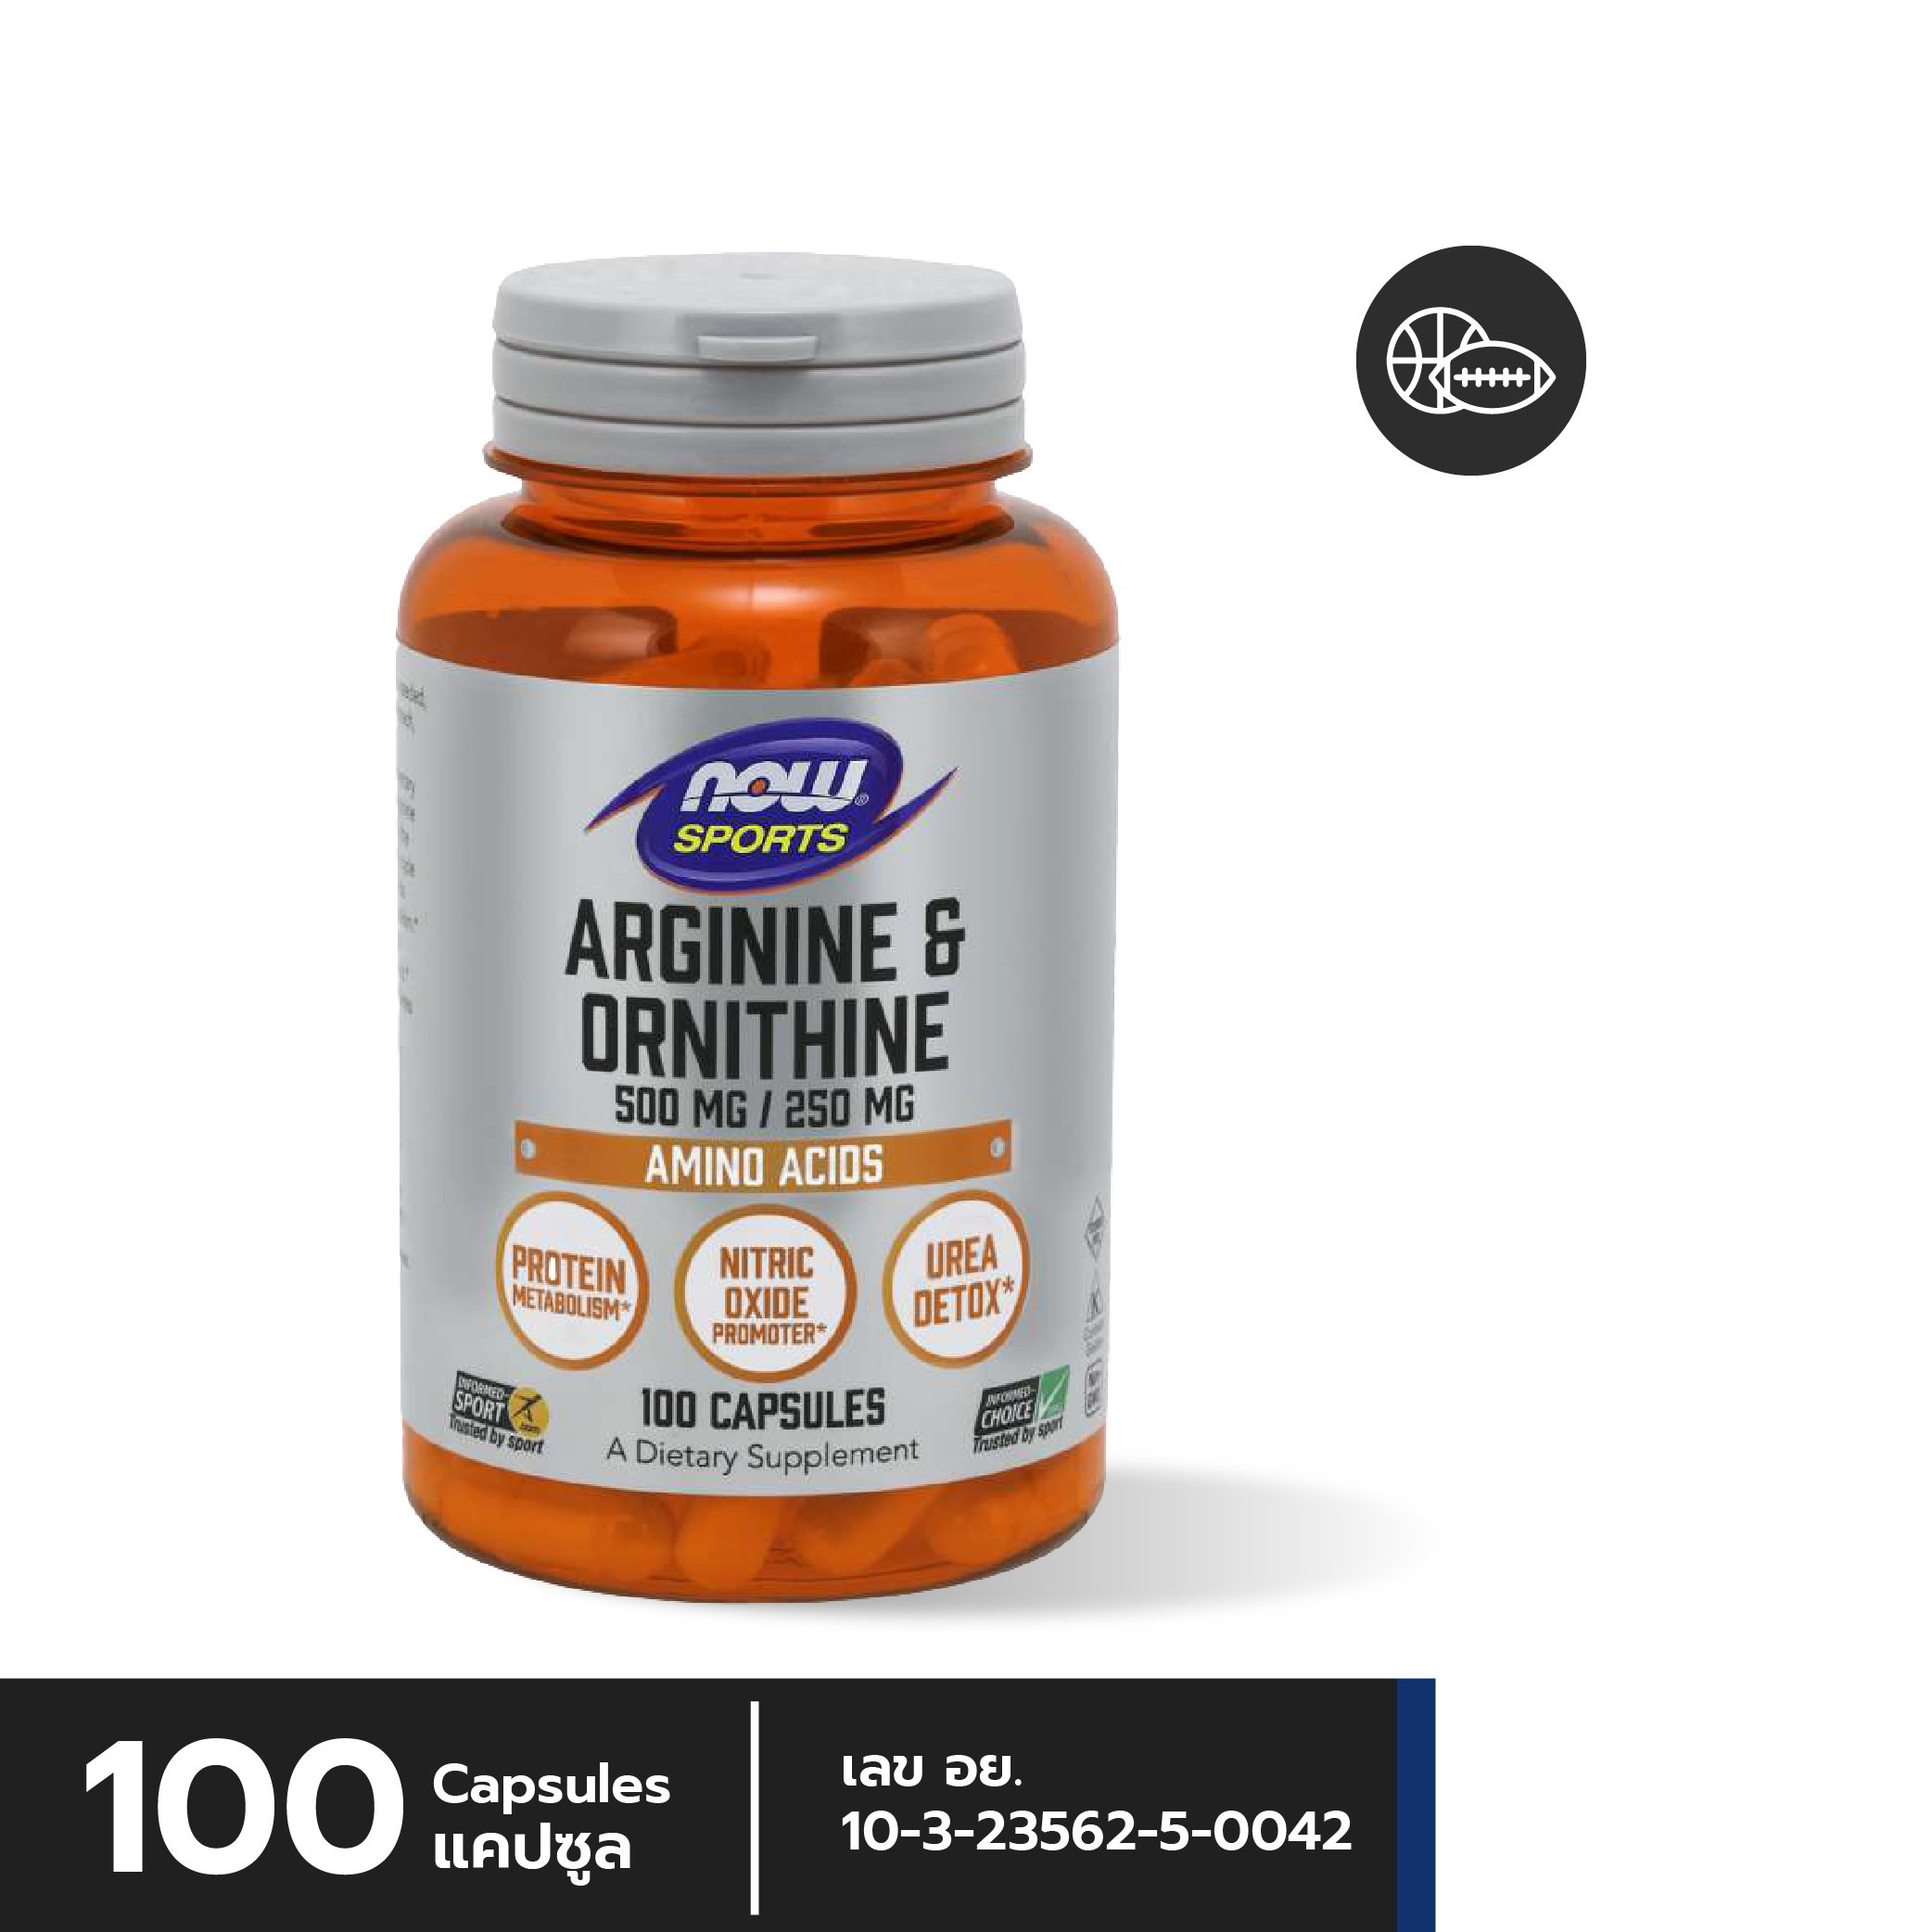 [ลูกค้าใหม่กรอก FORYOU89 ลดเลย 89.-] NOW Arginine & Ornithine 500 mg / 250 mg Capsules